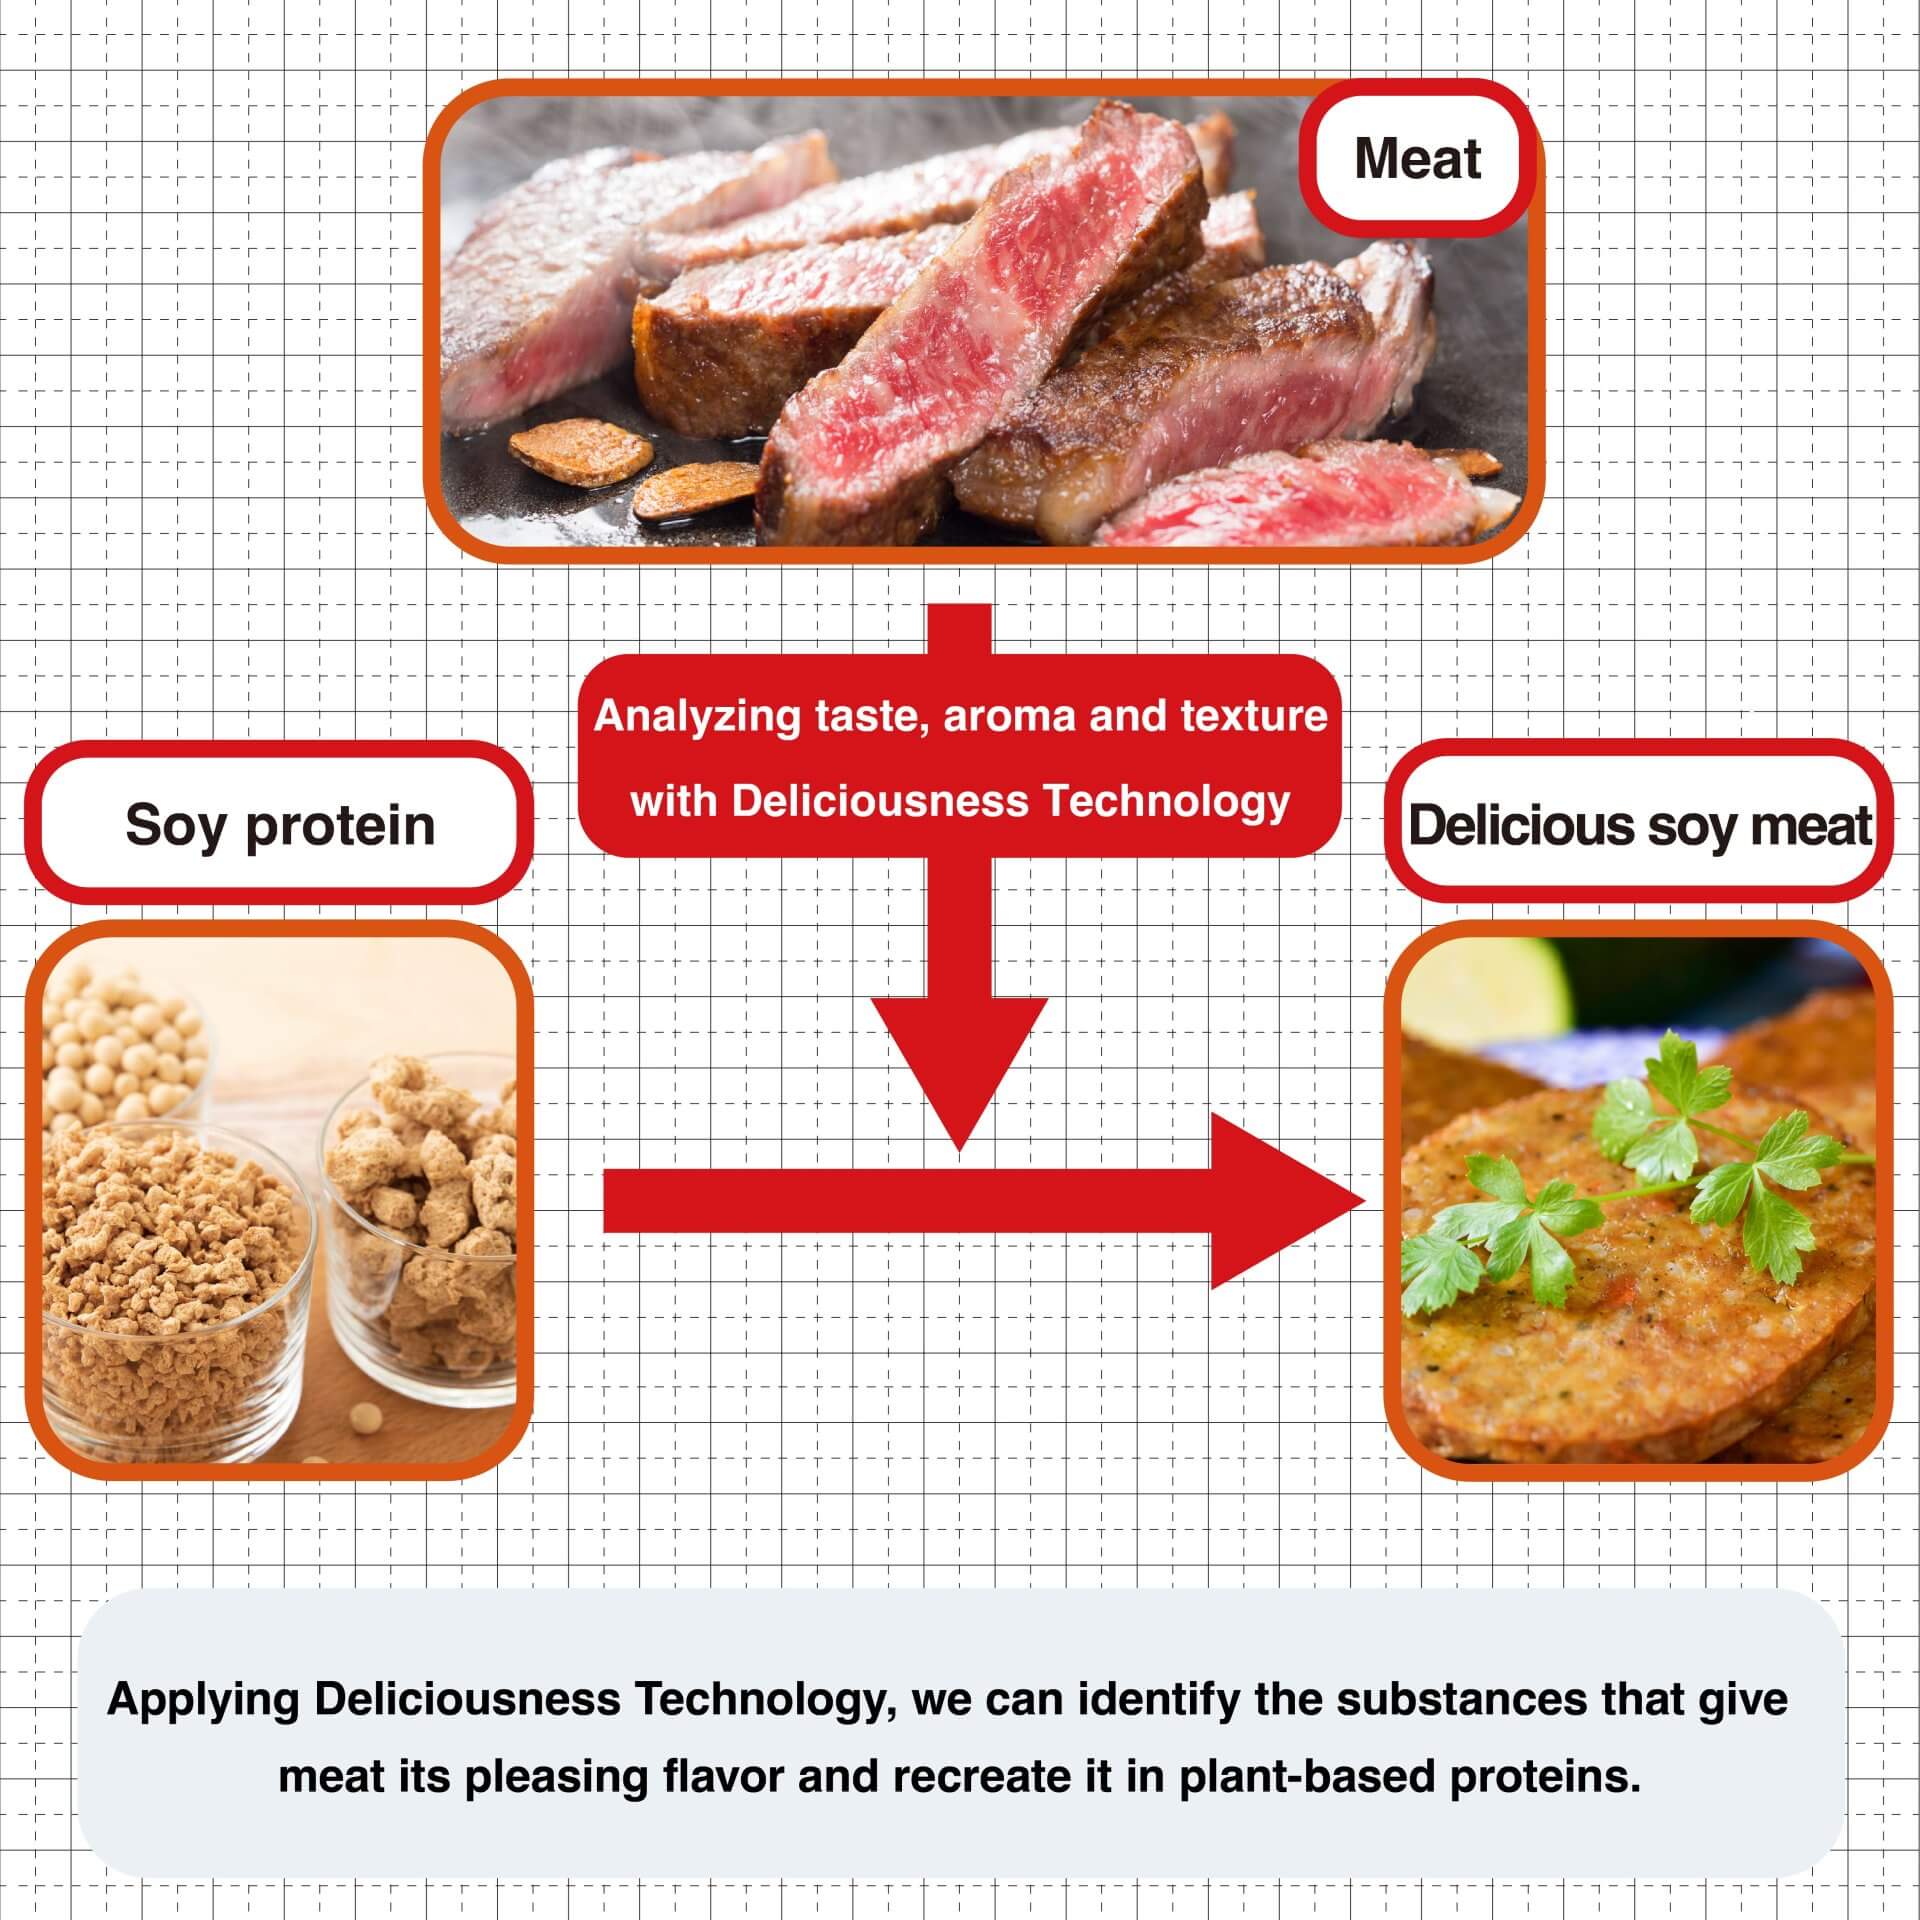 Áp dụng Công nghệ Độ ngon, chúng ta có thể xác định các chất mang lại hương vị dễ chịu cho thịt và tái tạo nó trong các protein có nguồn gốc thực vật.